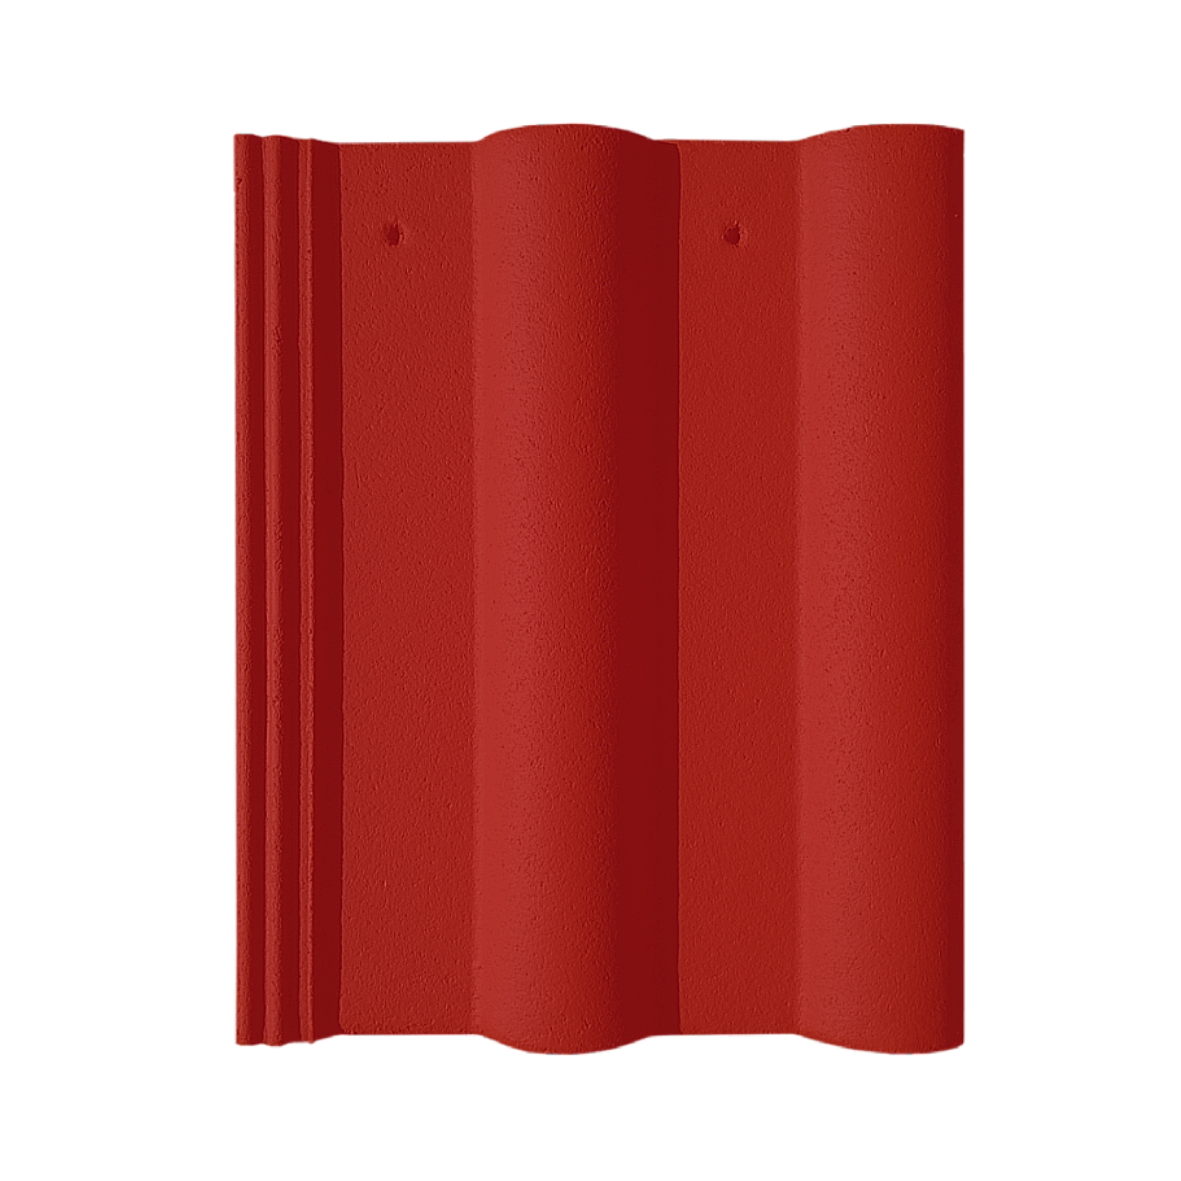 Tigla beton si accesorii - Tigla de beton Nova Double Roman rosu coral 420 x 330 mm, maxbau.ro